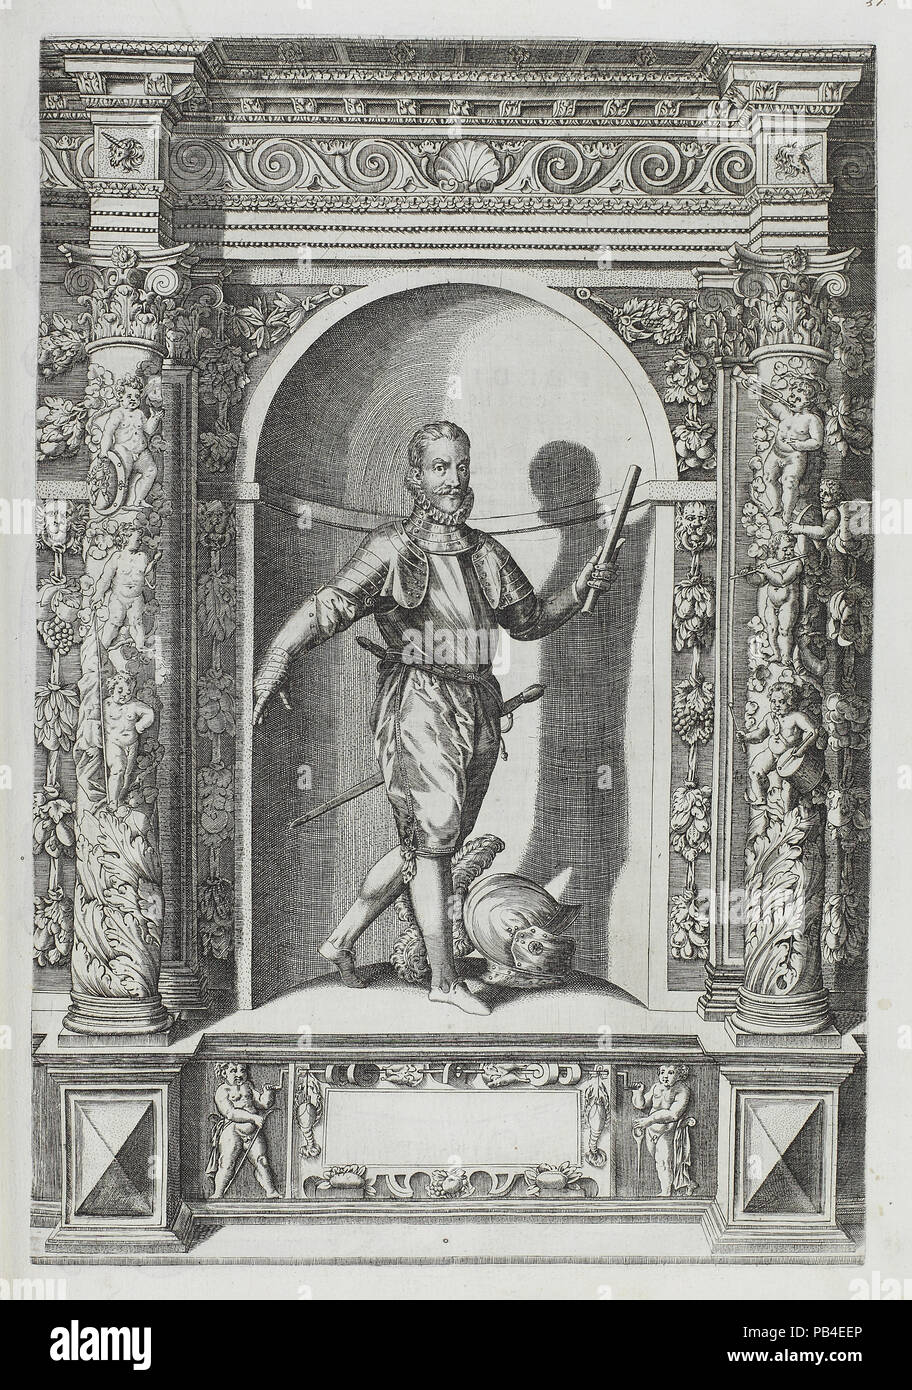 Plate 57 from Augustissimorium Imperatorum Regum Stock Photo